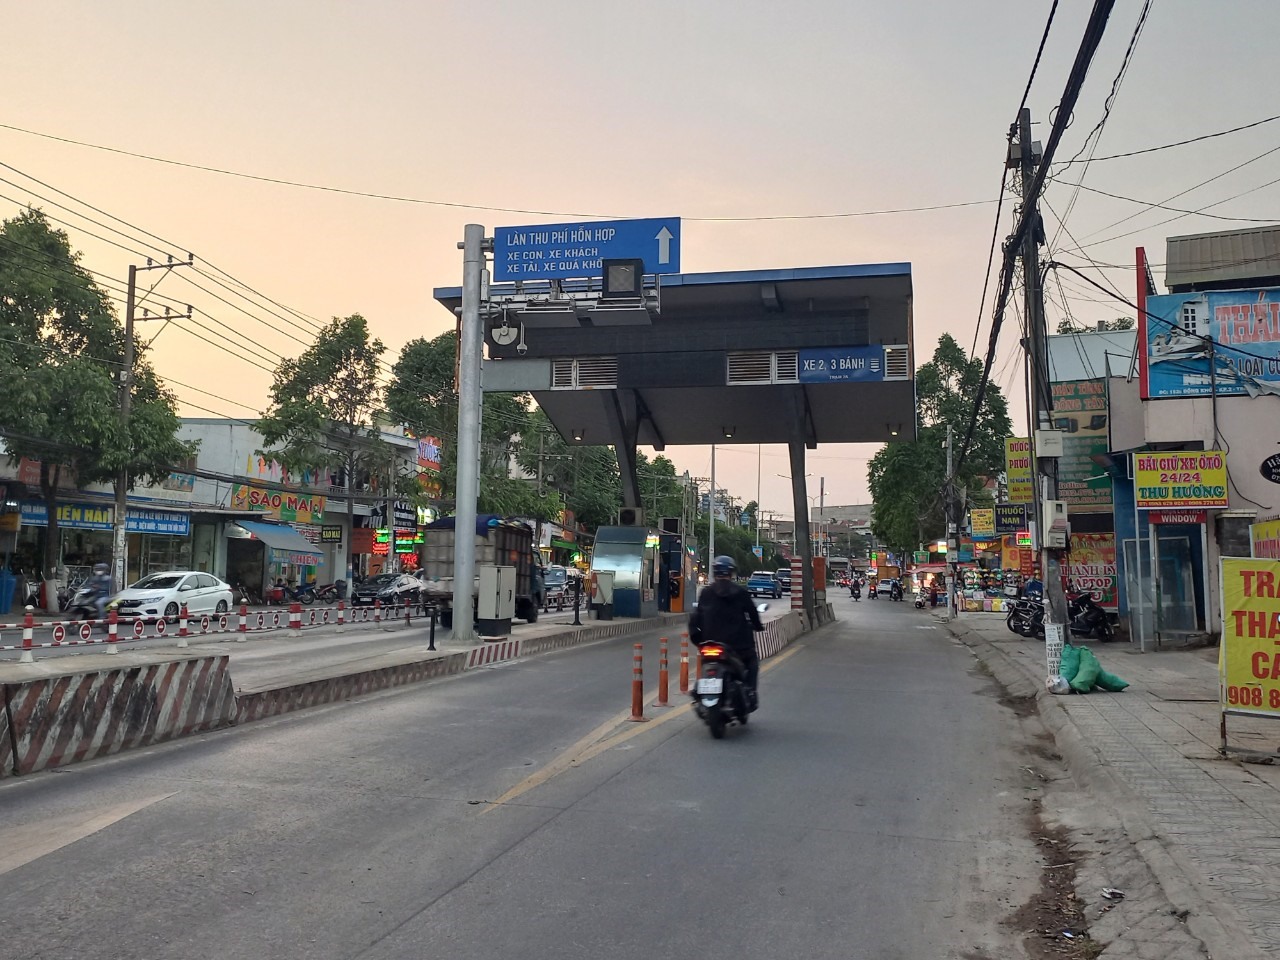 Theo ghi nhận, Trạm thu phí BOT đường 768 đặt trên đường Đồng Khởi, TP Biên Hoà đã hoàn tất thi công hệ thống thu phí không dừng ETC, chờ thu phí trở lại. Ảnh: Hà Anh Chiến